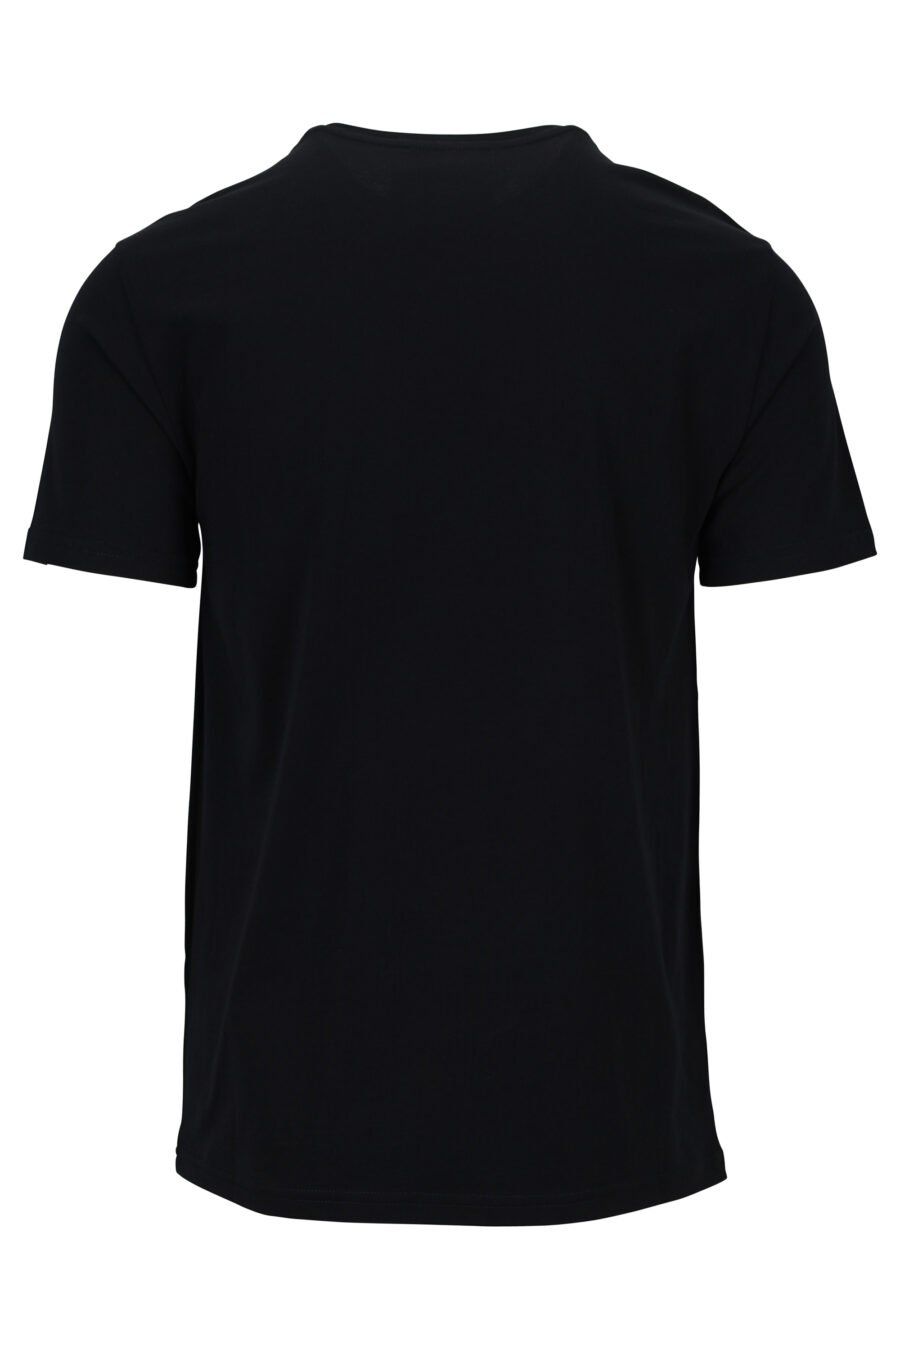 Camiseta negra eco con minilogo oso - 889316853063 1